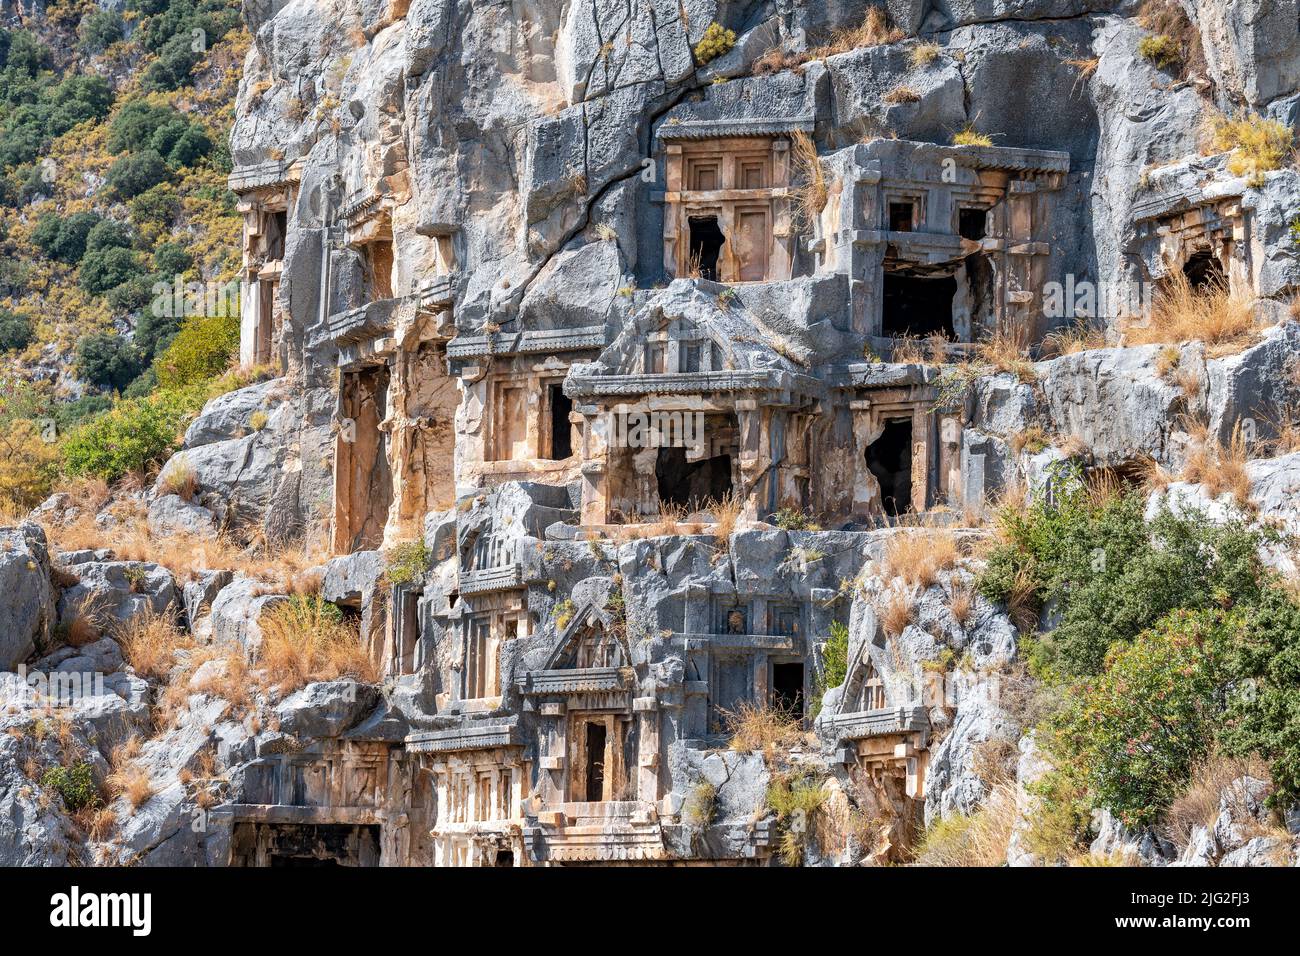 Tumbas cortadas en roca en la antigua ciudad de Myra, Turquía. Foto de stock